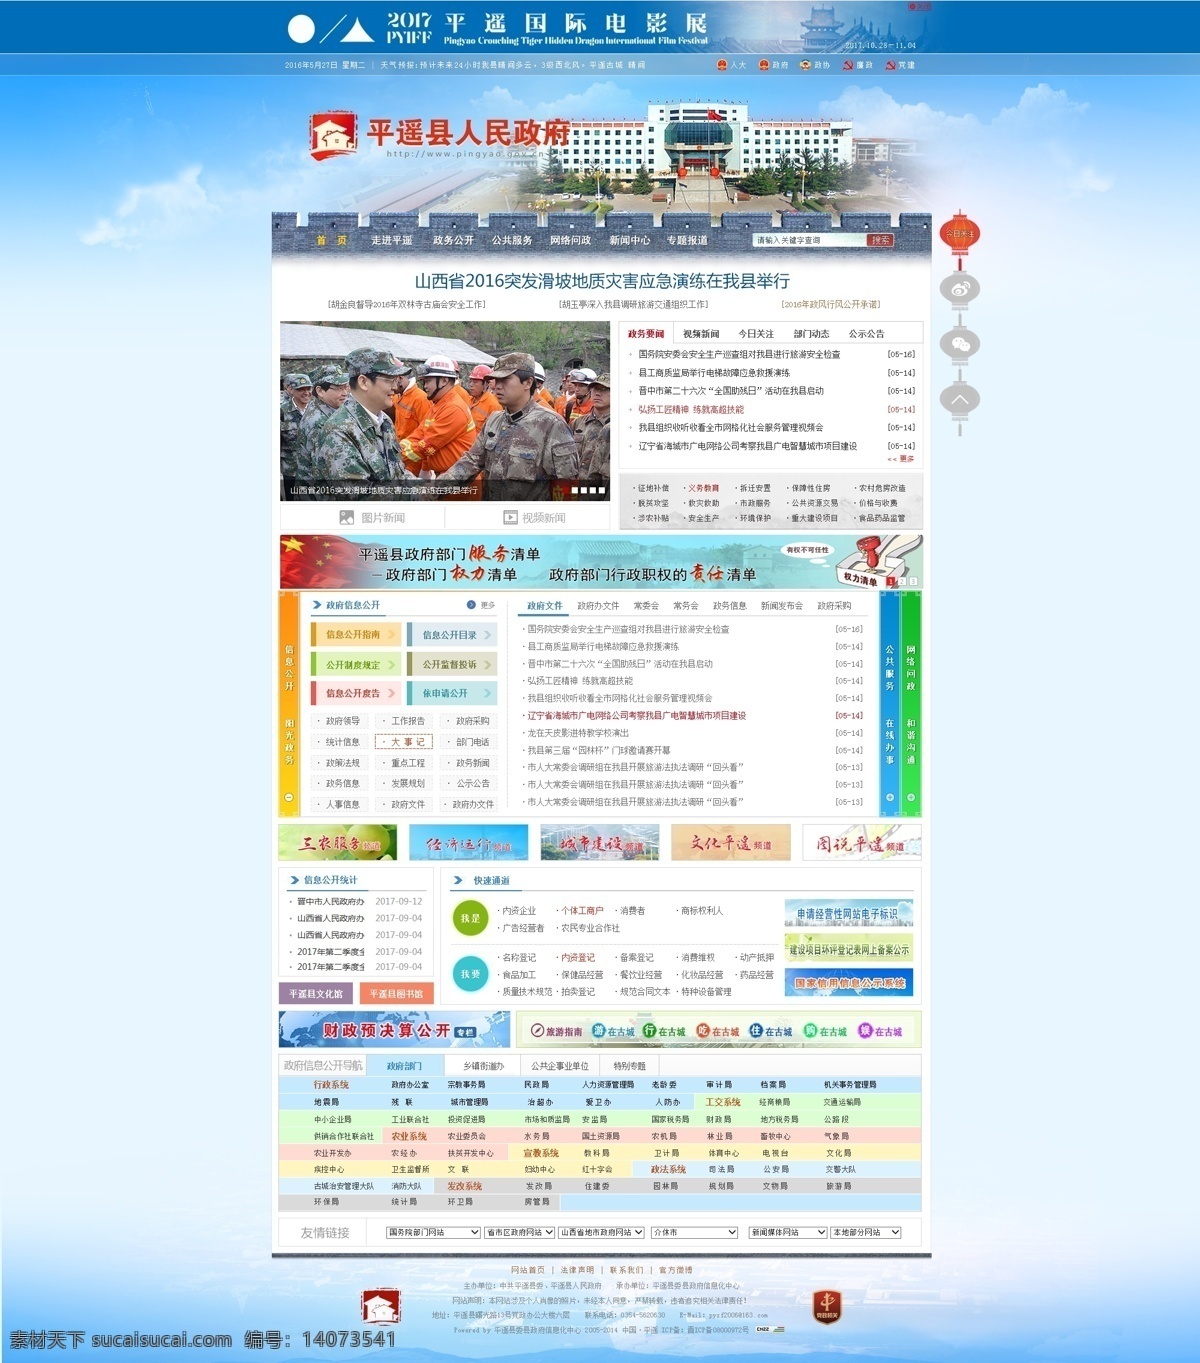 政府网站首页 政府部门网站 政府网页 机关单位网站 web 界面设计 中文模板